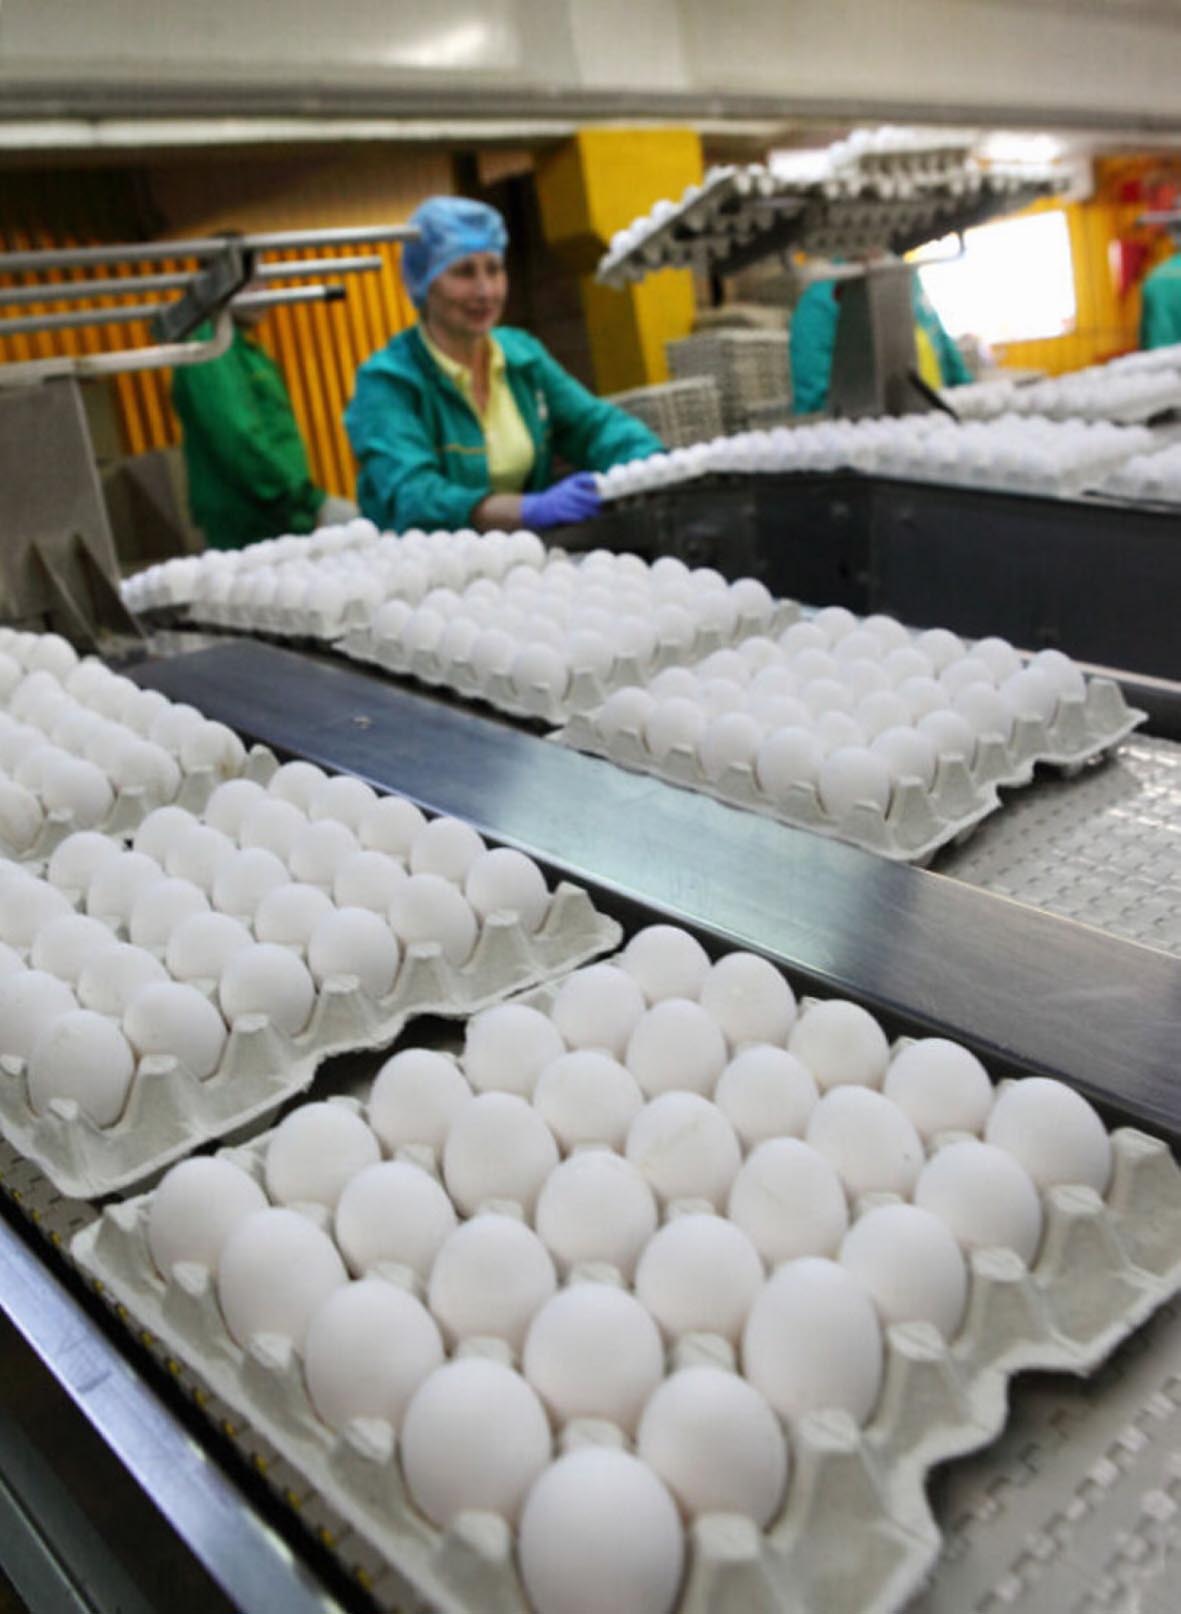 За допомогою урядових заходів відпускні ціни підприємств на курячі яйця  вдалося знизити. Тепер справа за  торговельними мережами. Фото з сайту yadobre.com.ua